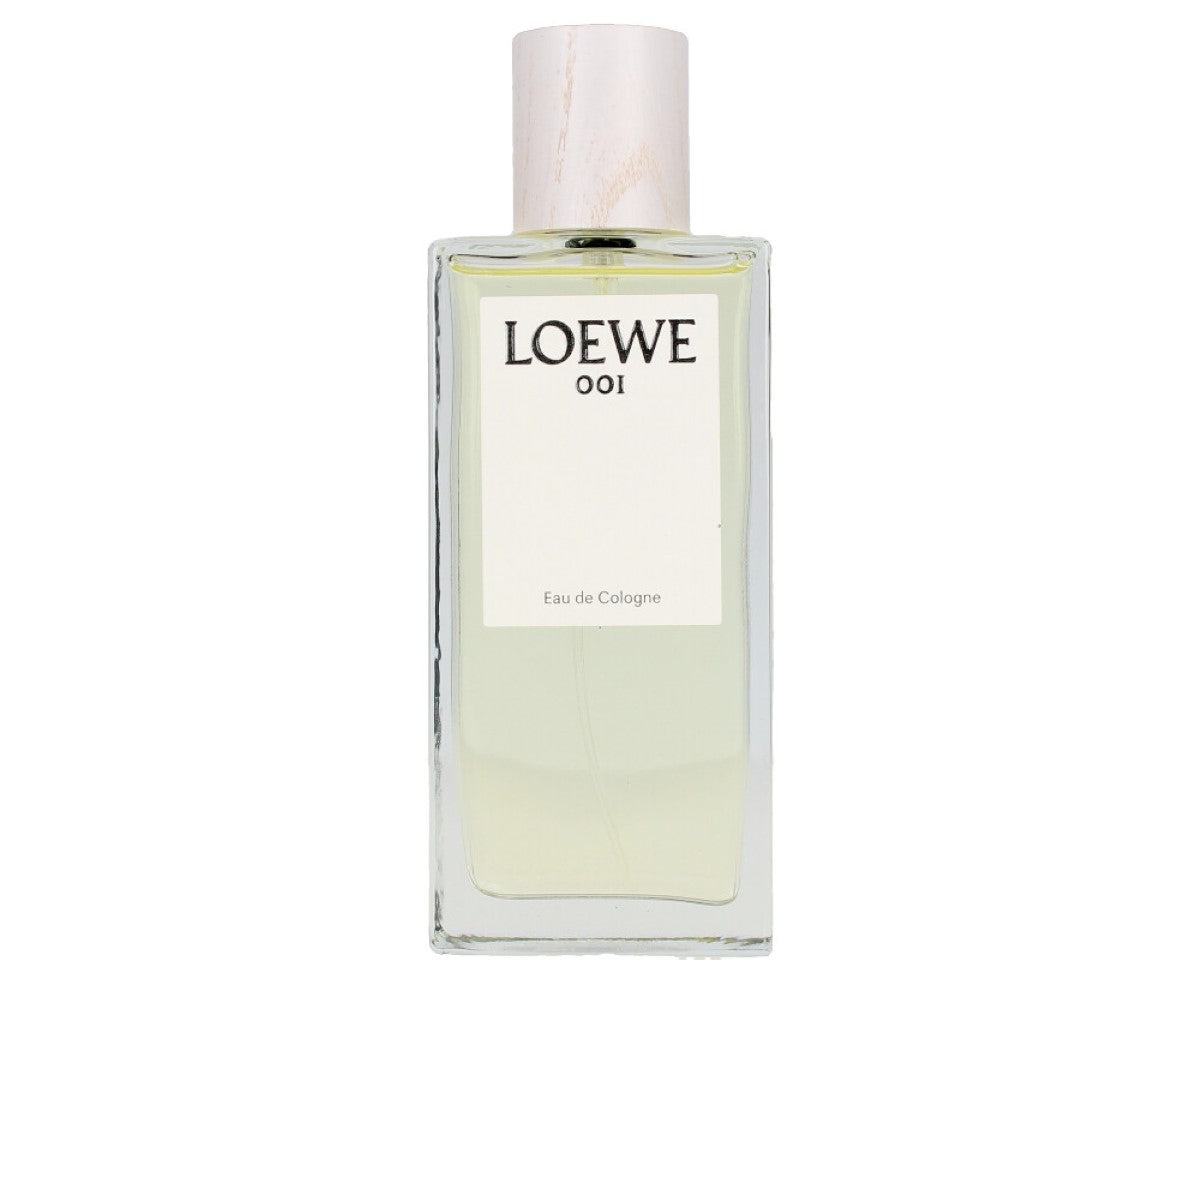 Parfum unisexe Loewe 001 EDC